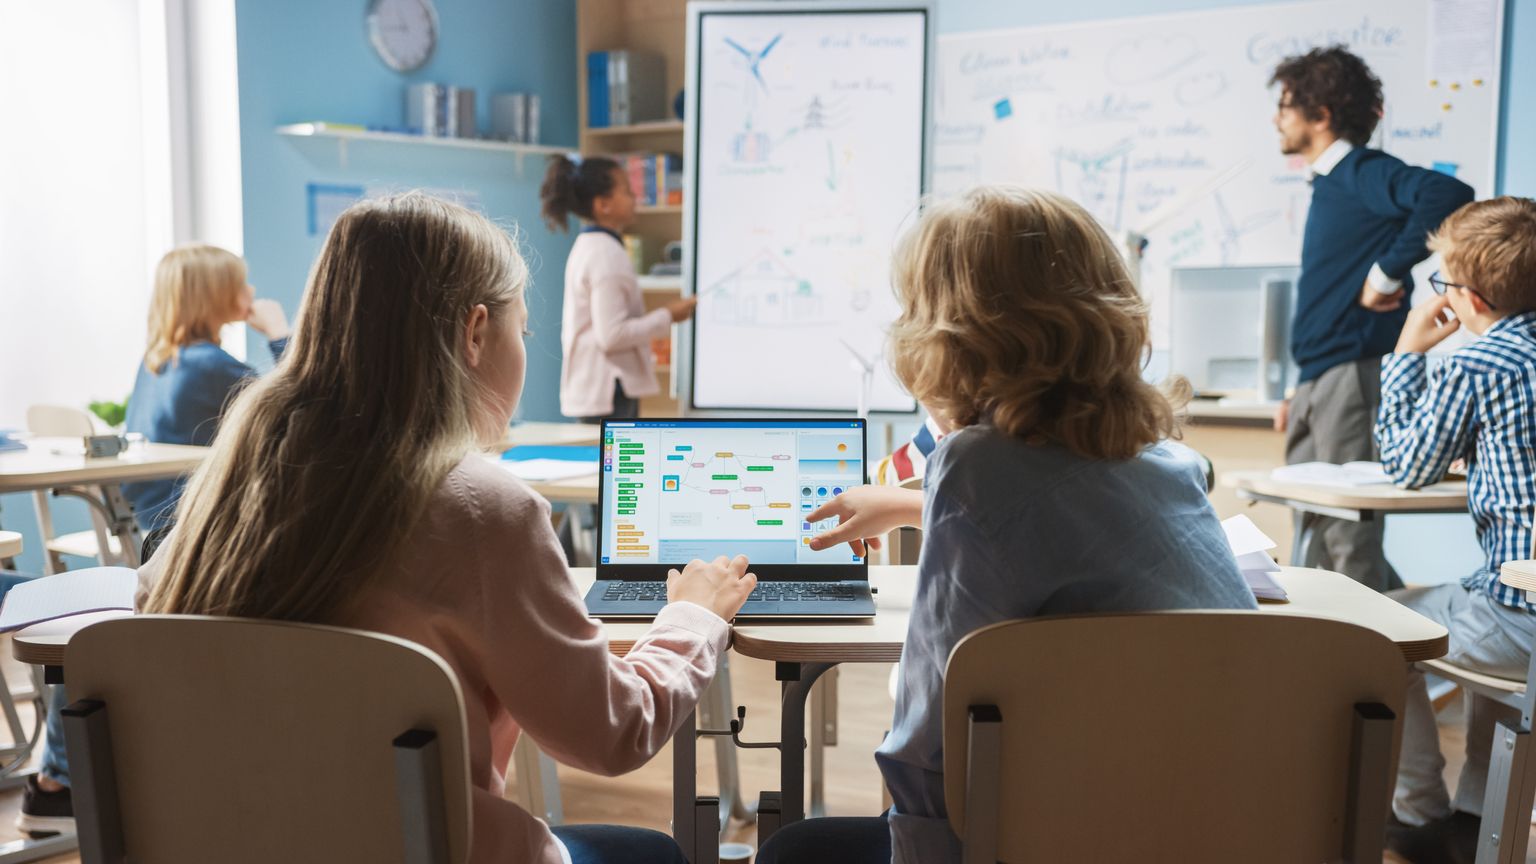 Classe de sciences à l'école primaire : Un petit garçon et une petite fille en bandoulière utilisent un ordinateur portable avec un écran montrant un logiciel de programmation. Un professeur de physique explique une leçon à une classe diversifiée d'enfants intelligents.